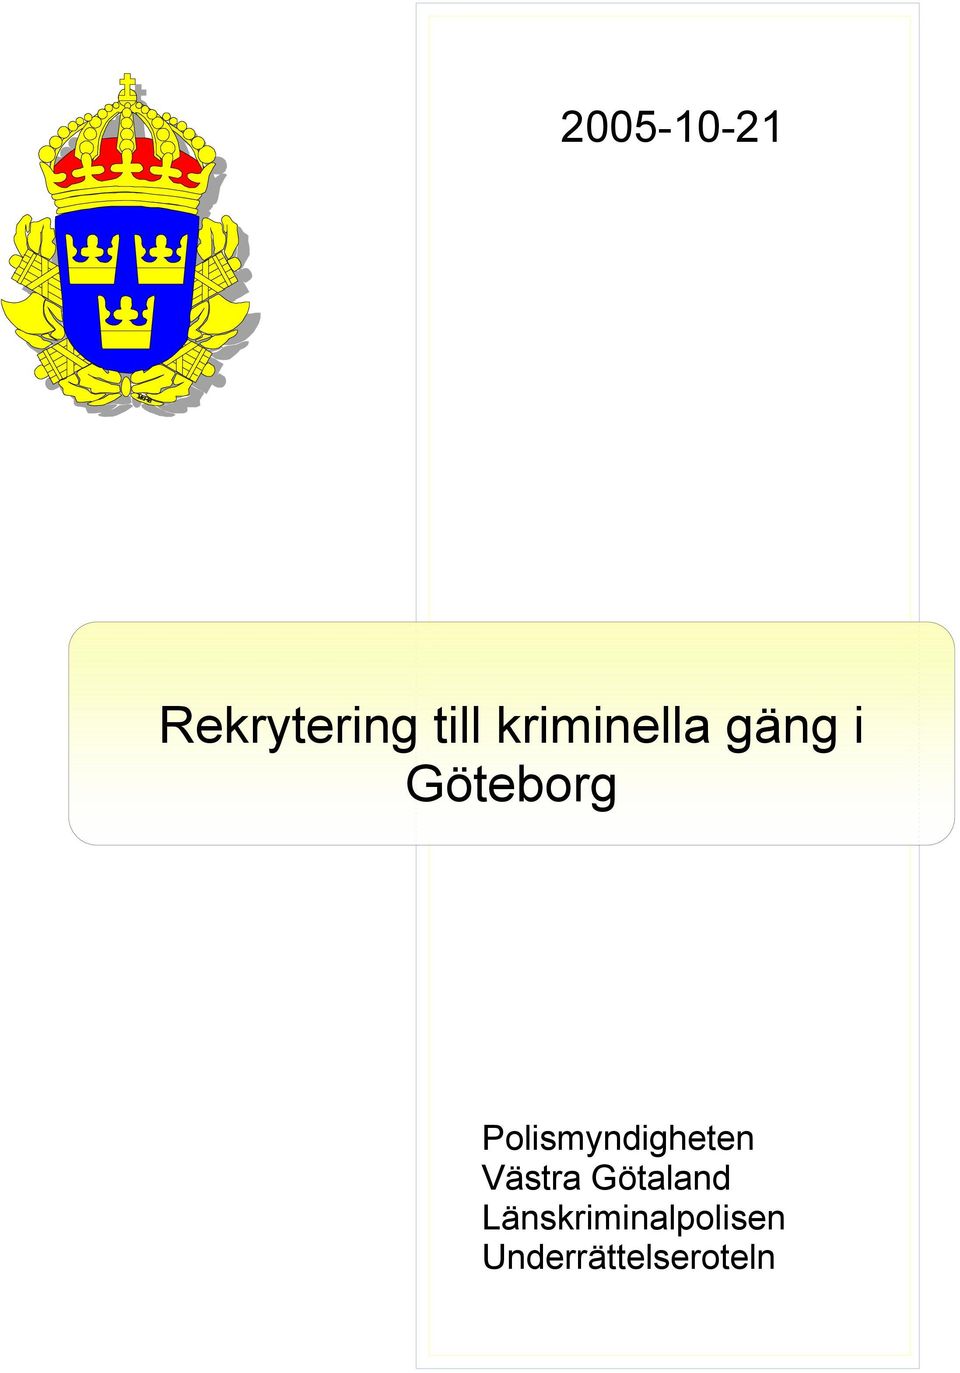 Polismyndigheten Västra Götaland